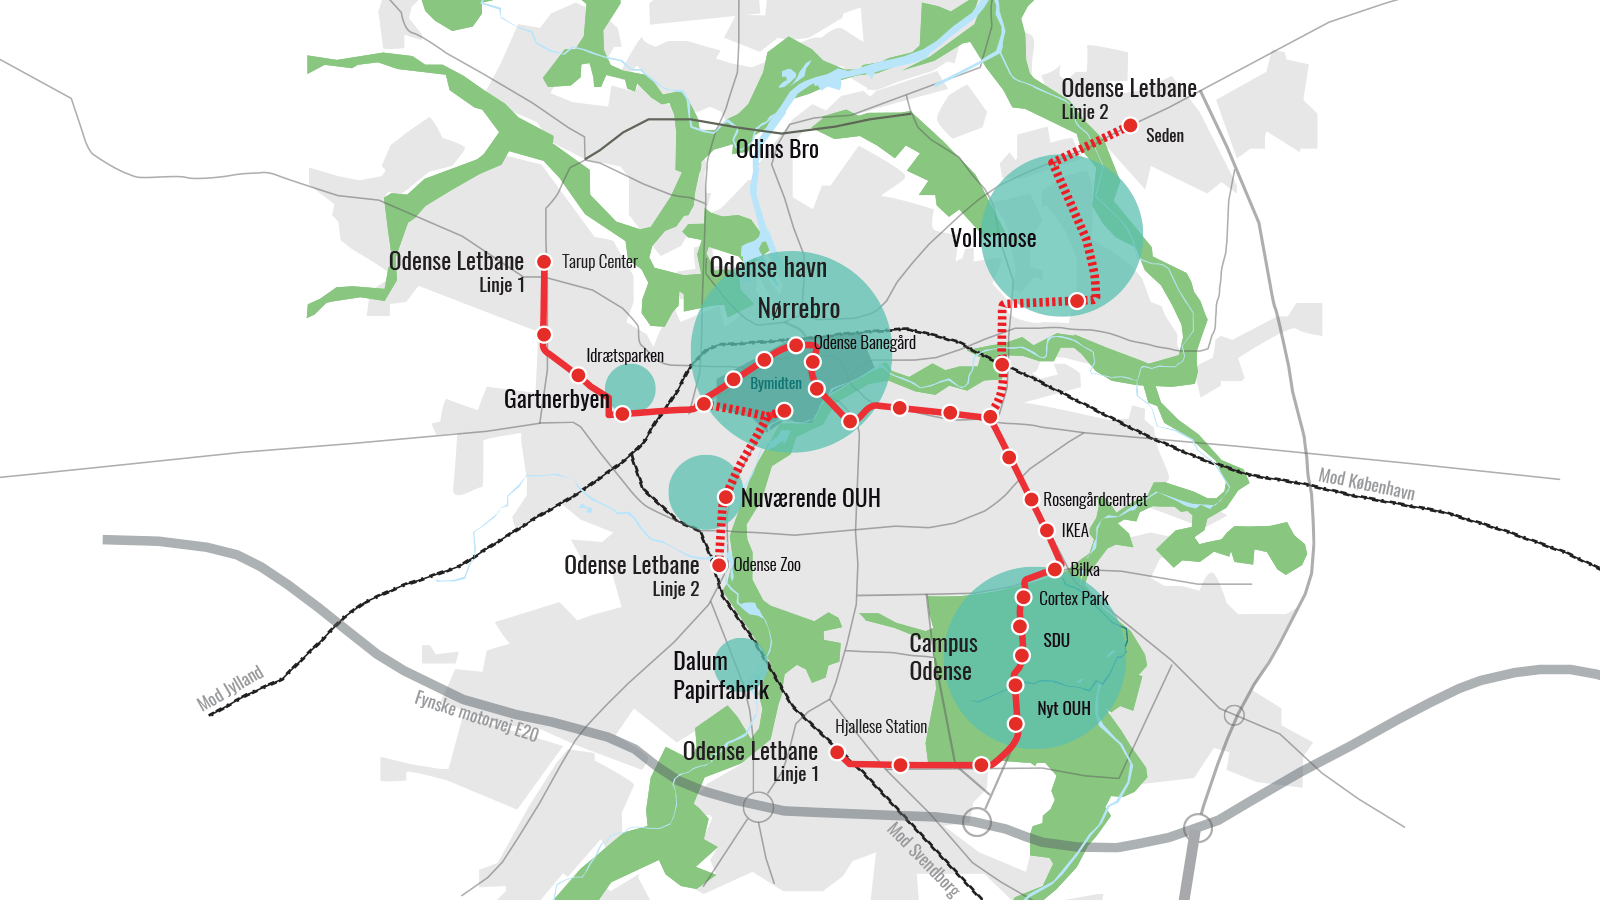 Kort over Odense, som viser sammenhæng mellem bymidten, Vollsmose og Campus Odense